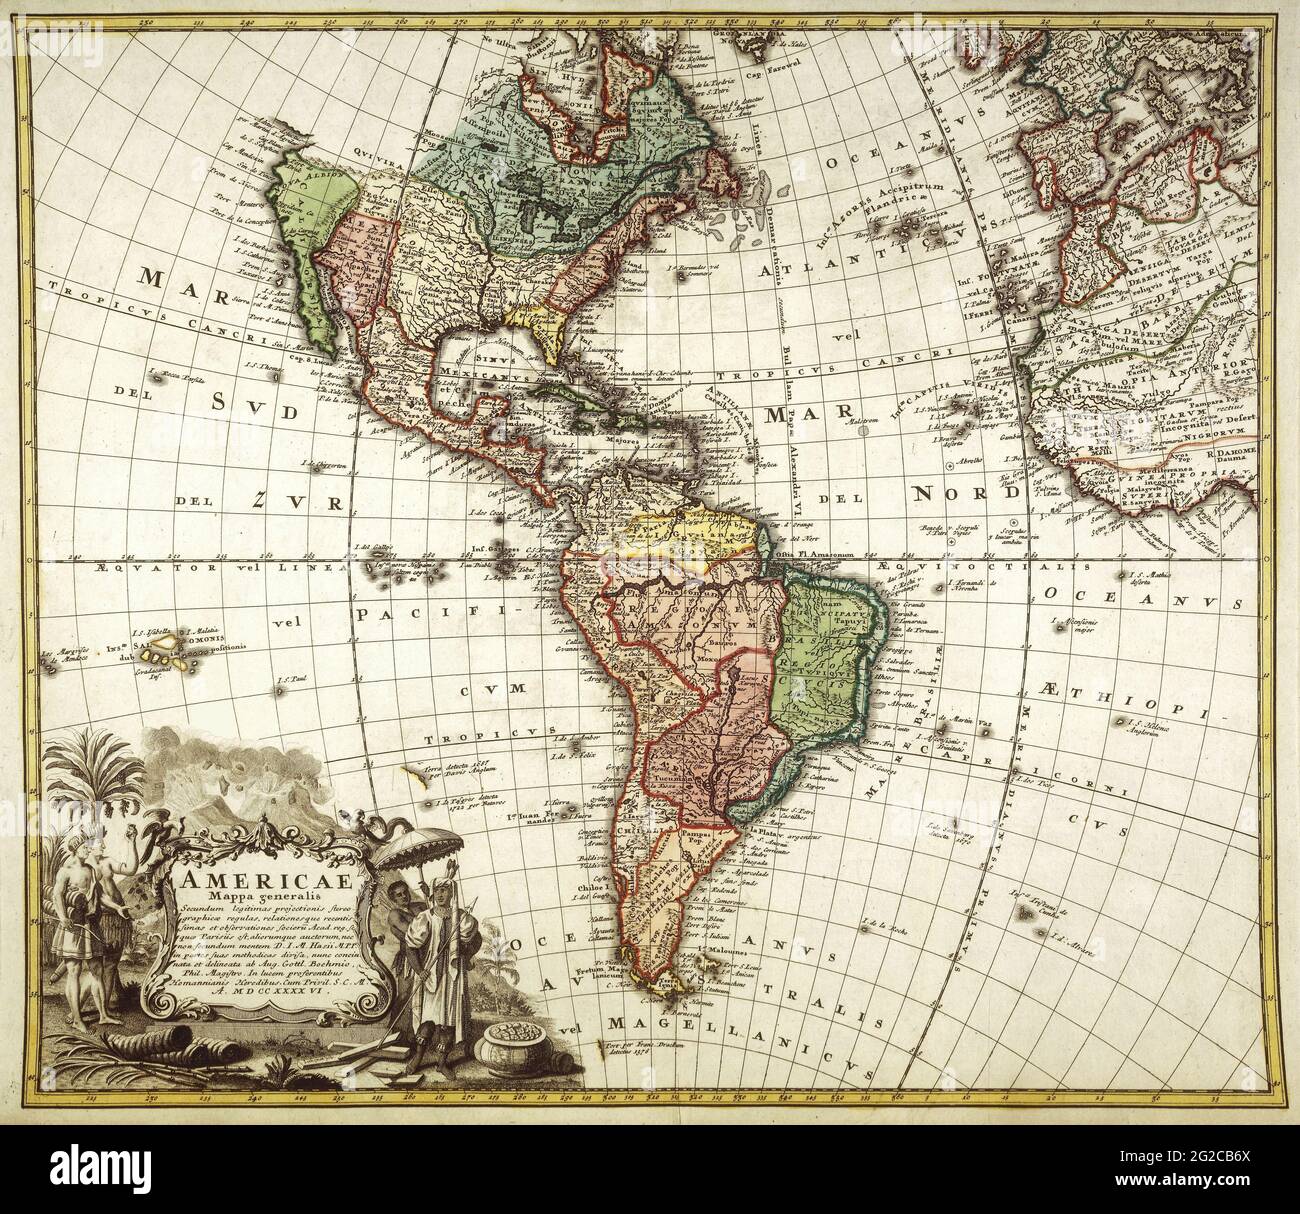 Mapa de las Américas, Mapa de las Américas, Mapa de las Américas, Mapa de las Américas Retro, Mapa de las Américas Vintage, Mapa de América, Mapa de América, 1730 Mapa Foto de stock